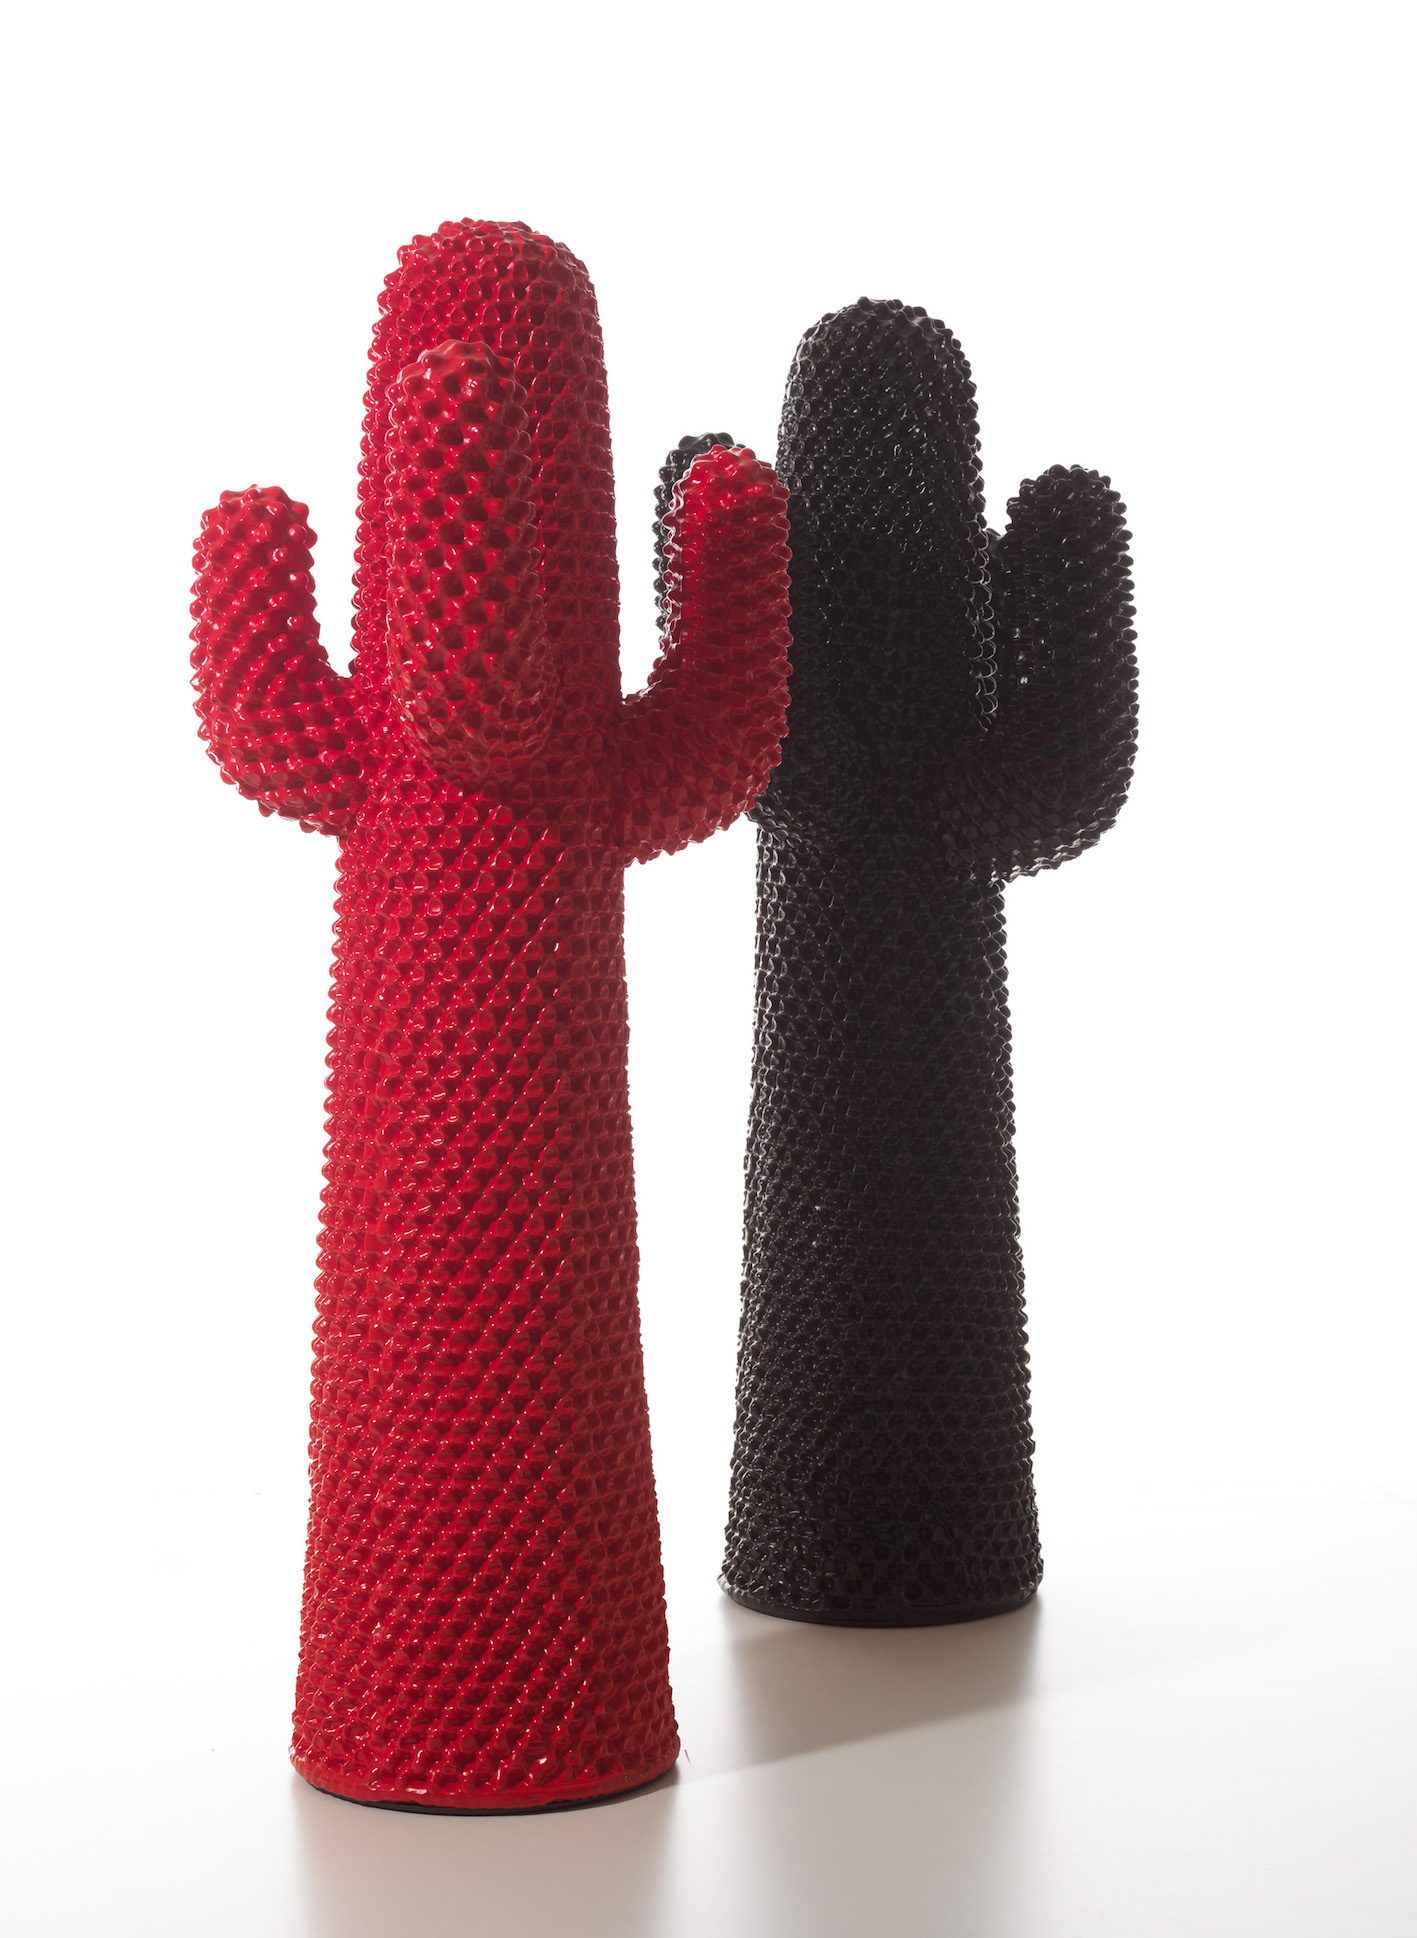 Nerocactus e Rossocactus, design di Drocco - Mello per Gufram, 2010.